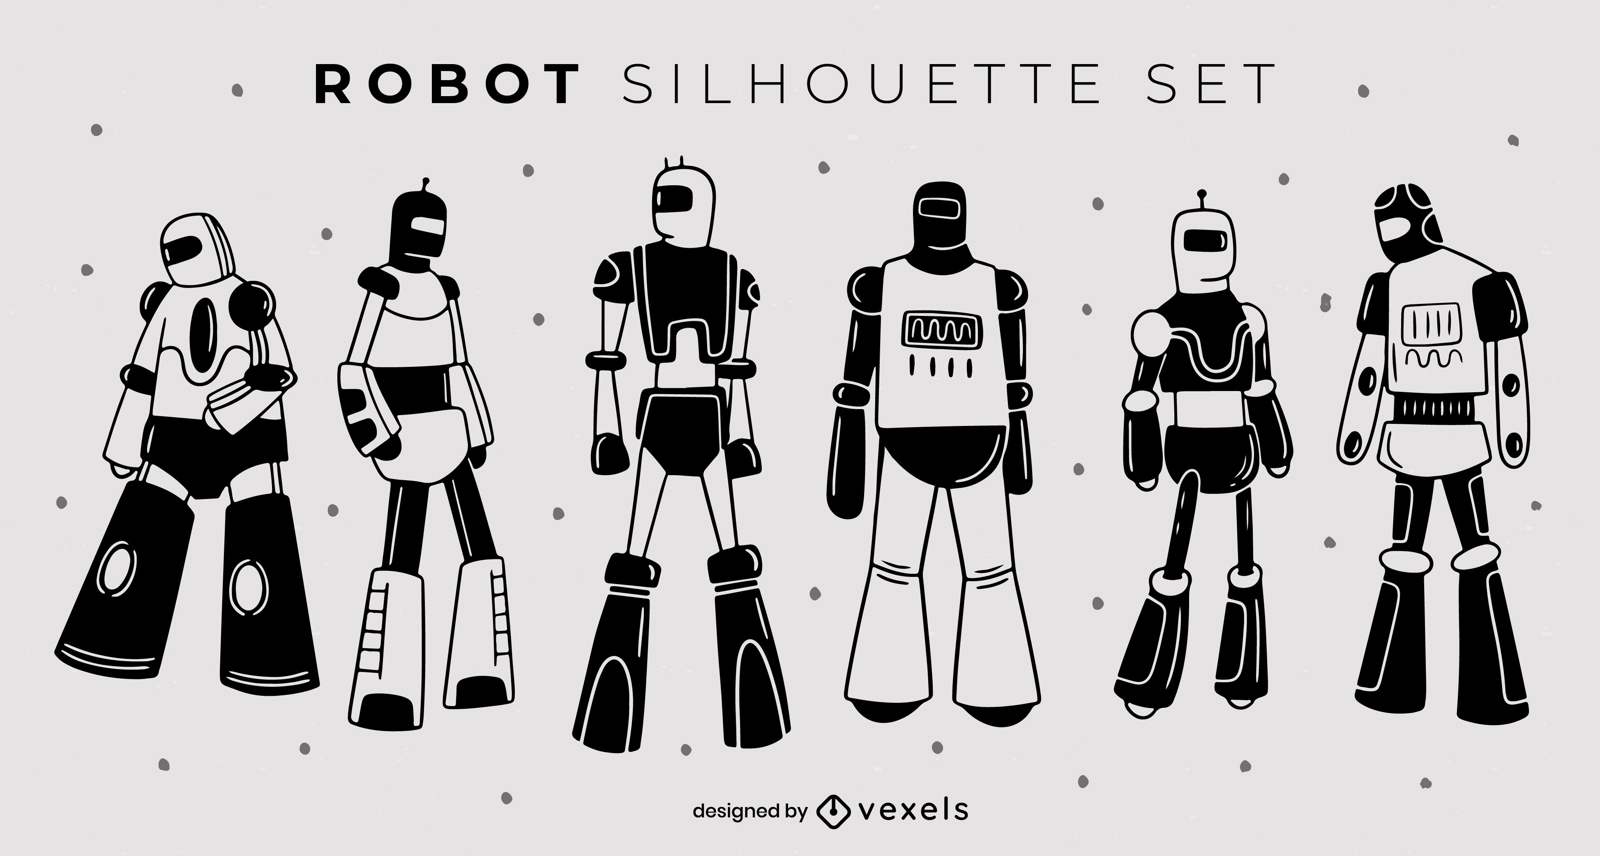 Diverse cast of robots technology set